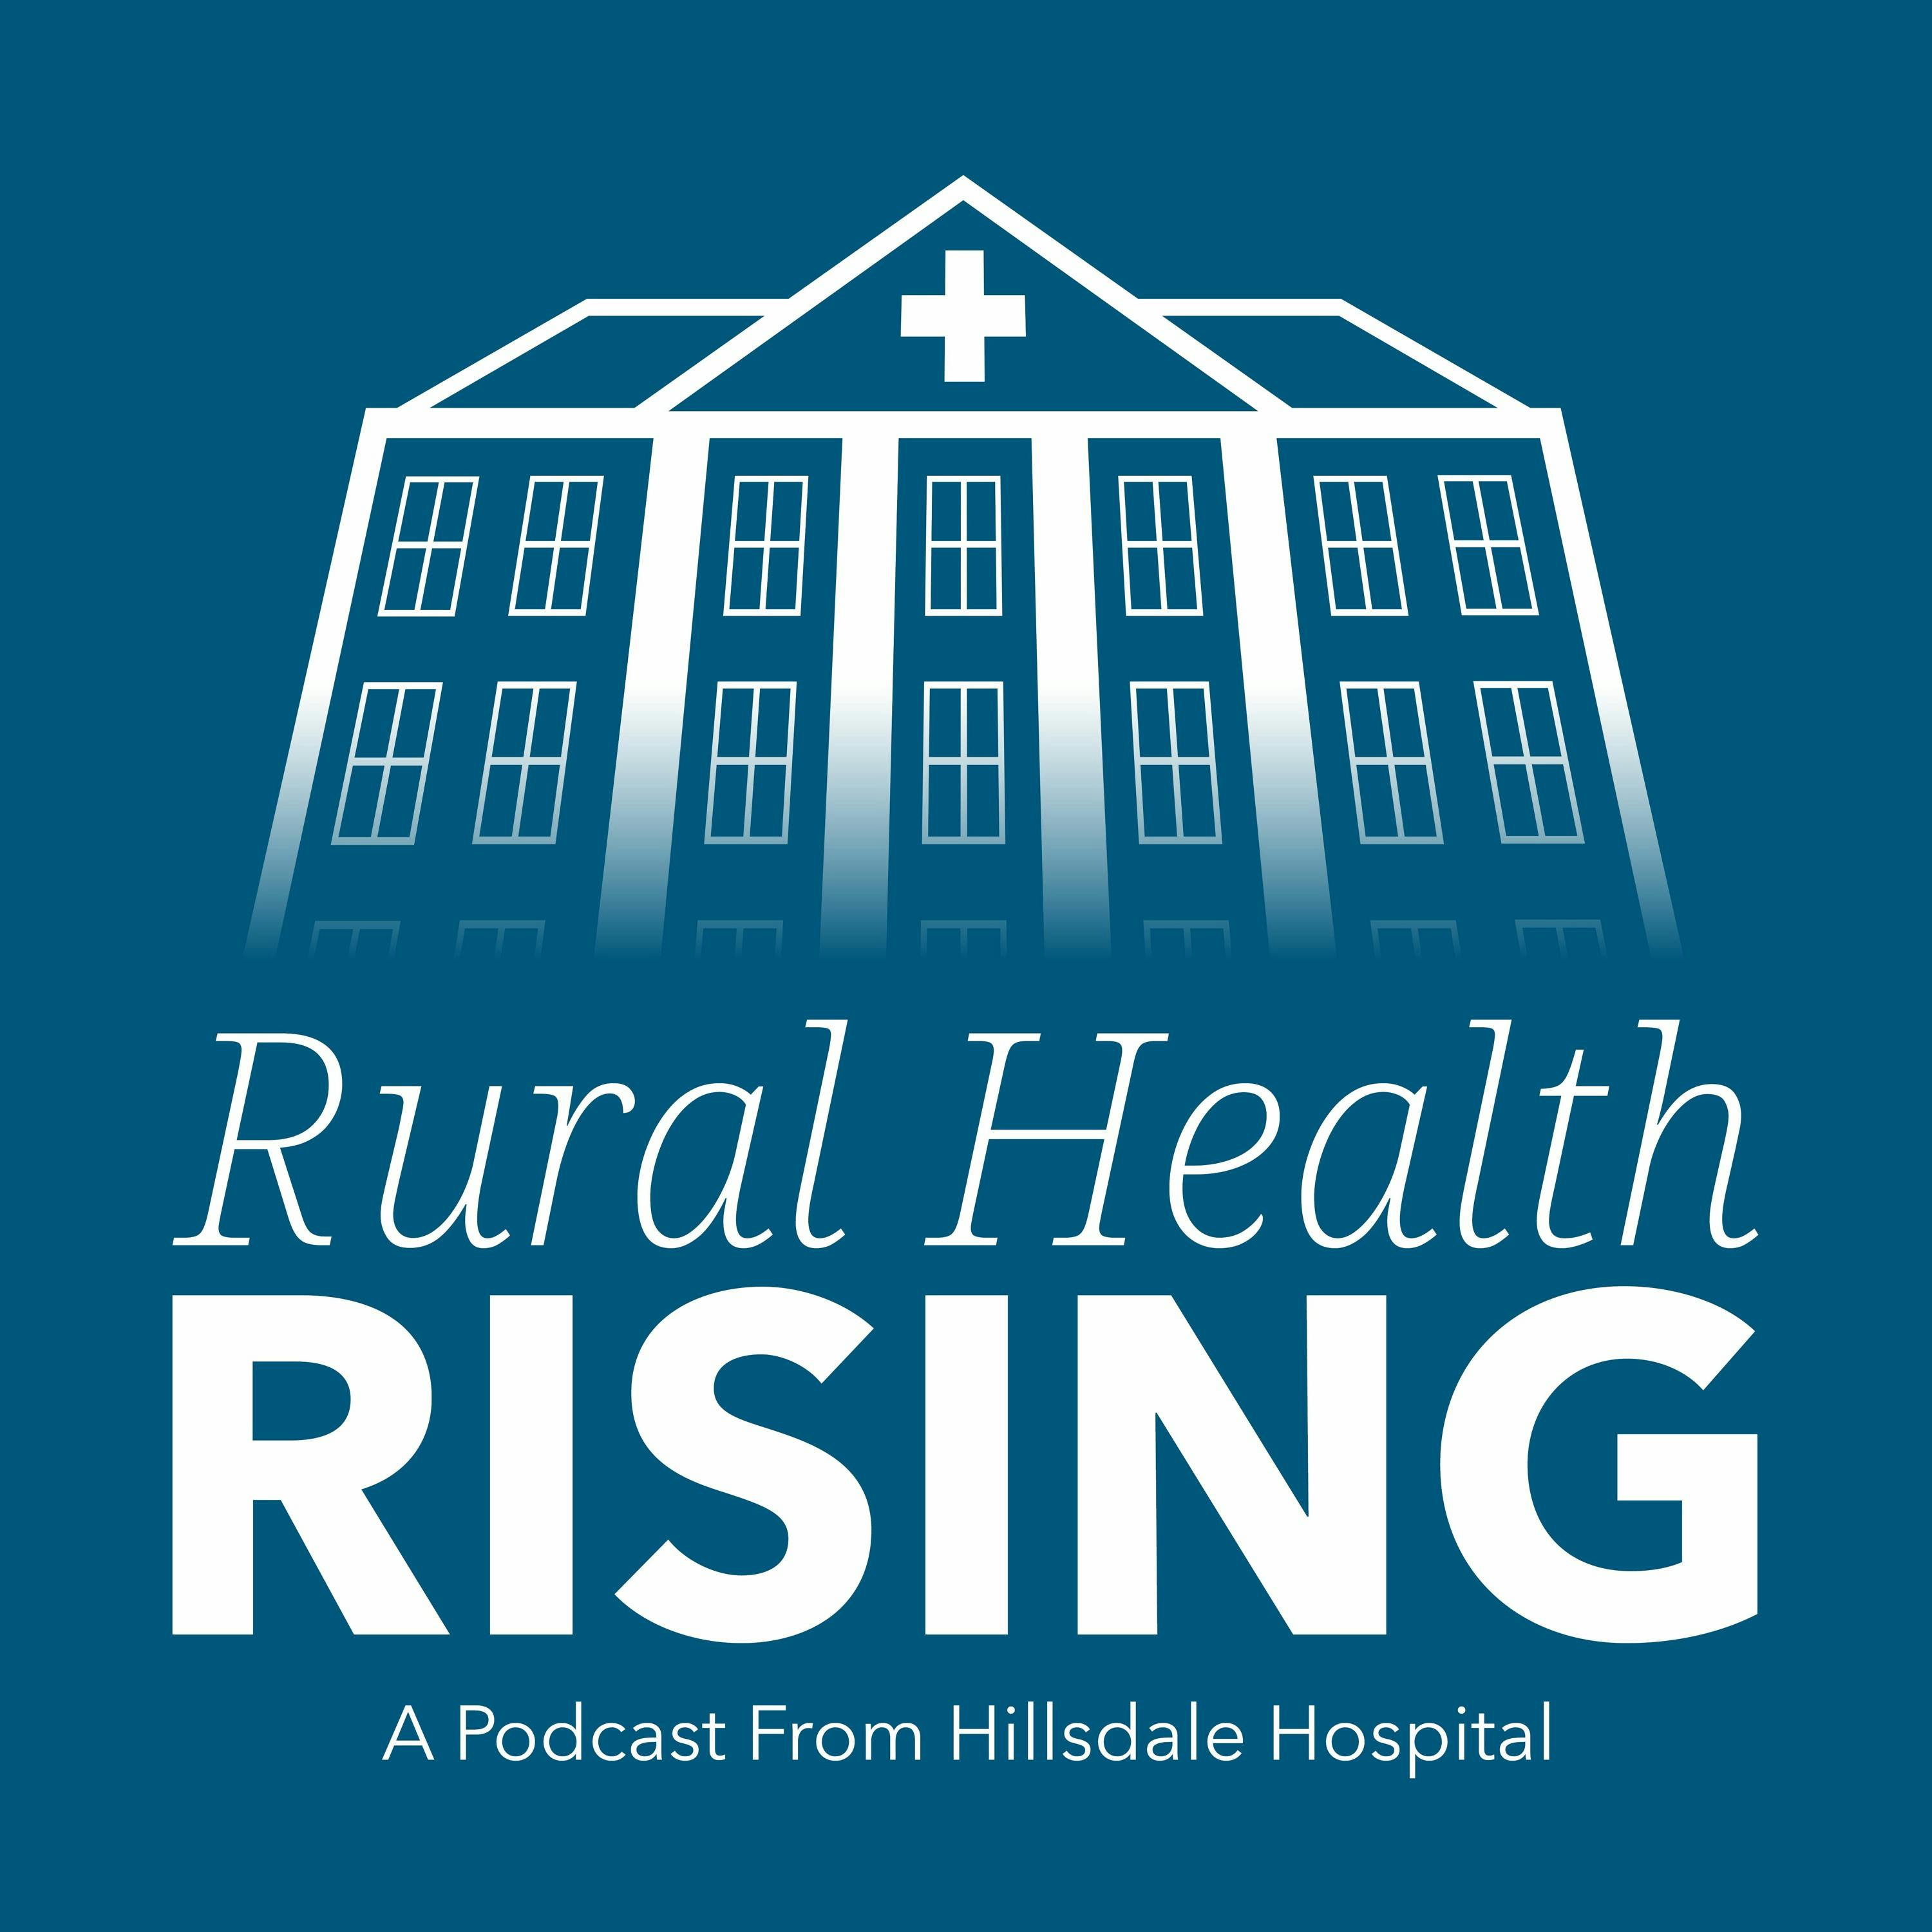 Episode 28: Part 1: Rural Hospital-Based Medicine